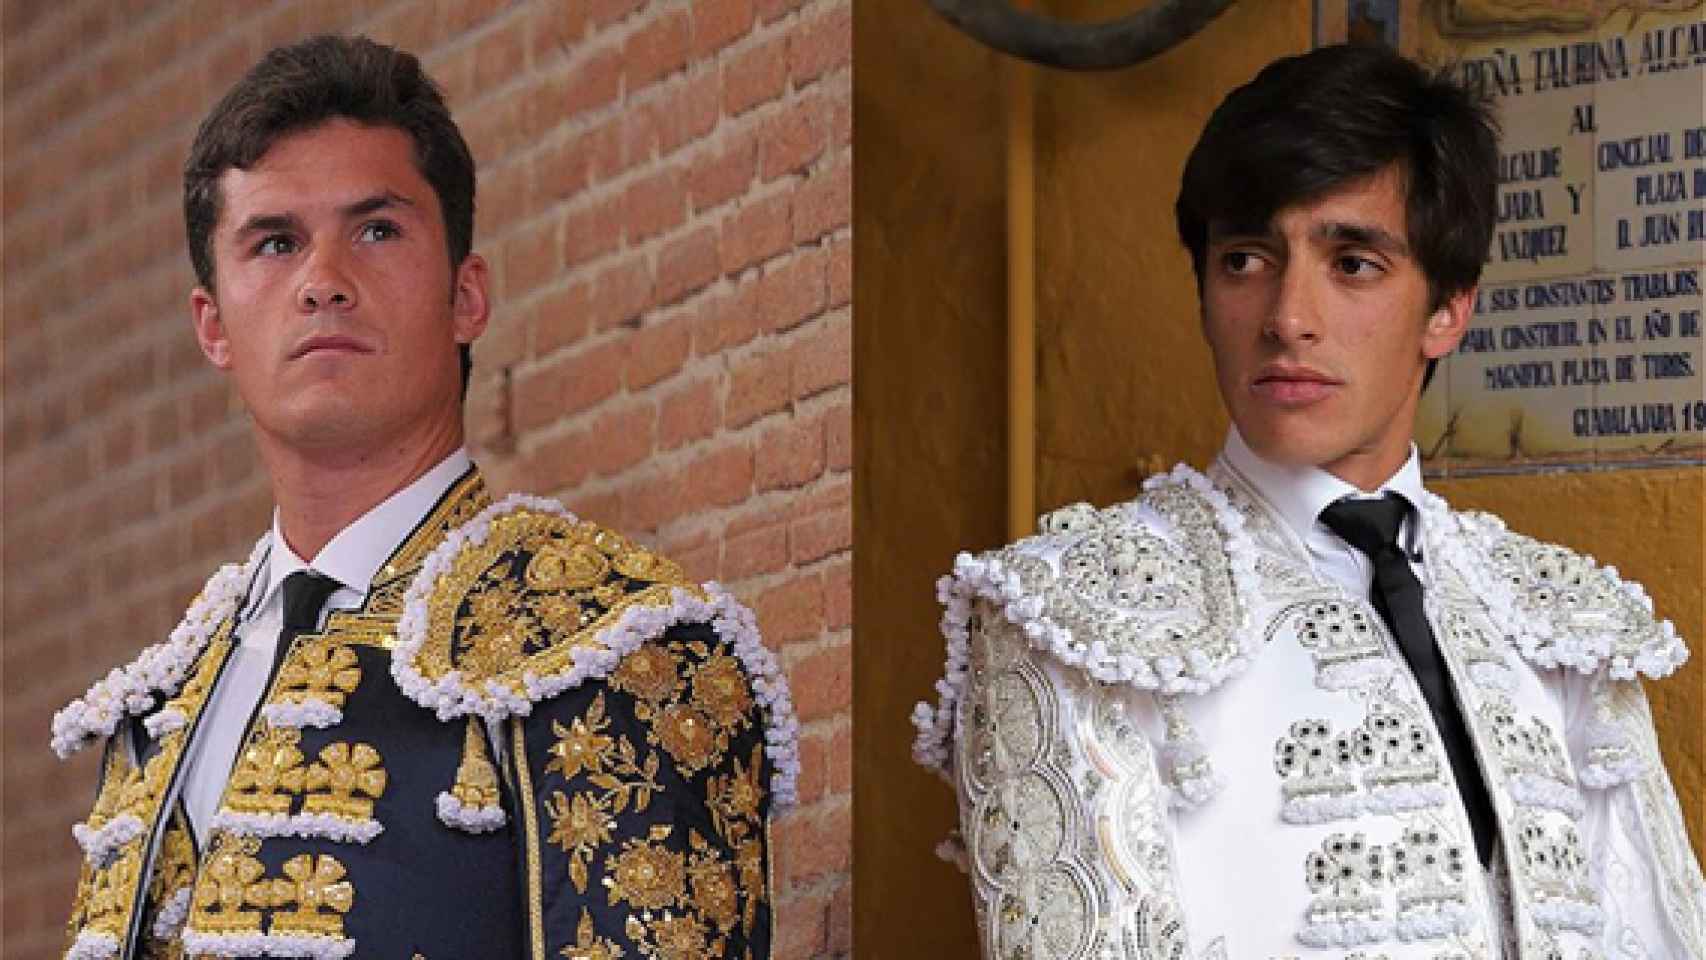 Daniel Luque y Ángel Téllez, mano a mano en Segovia Fotografía Tauromedia